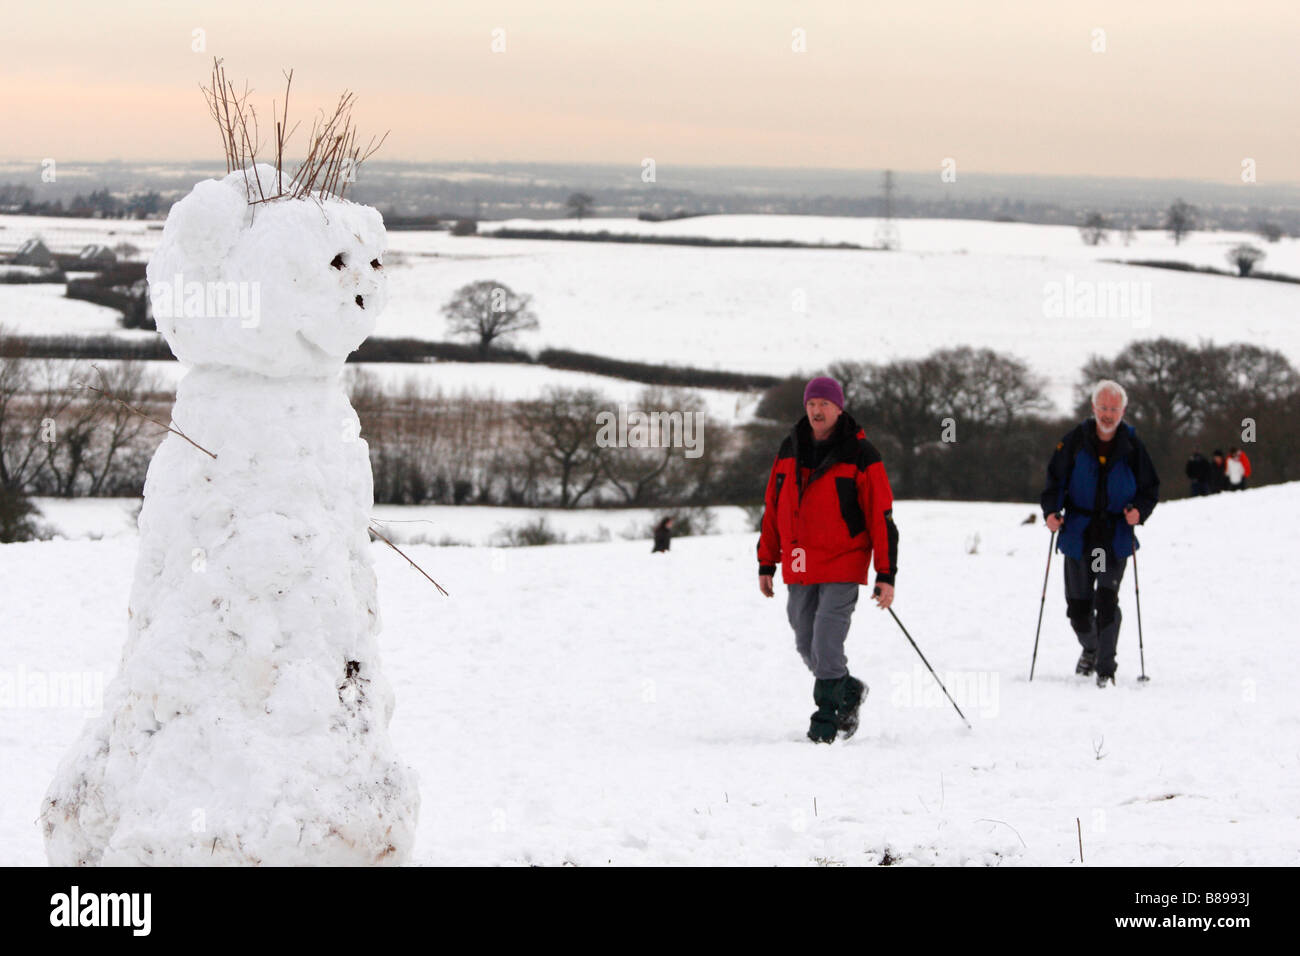 Schneemann und Wanderer im Schnee bedeckten Bereich winter Landschaft Szene, Oxfordshire, England, UK Stockfoto